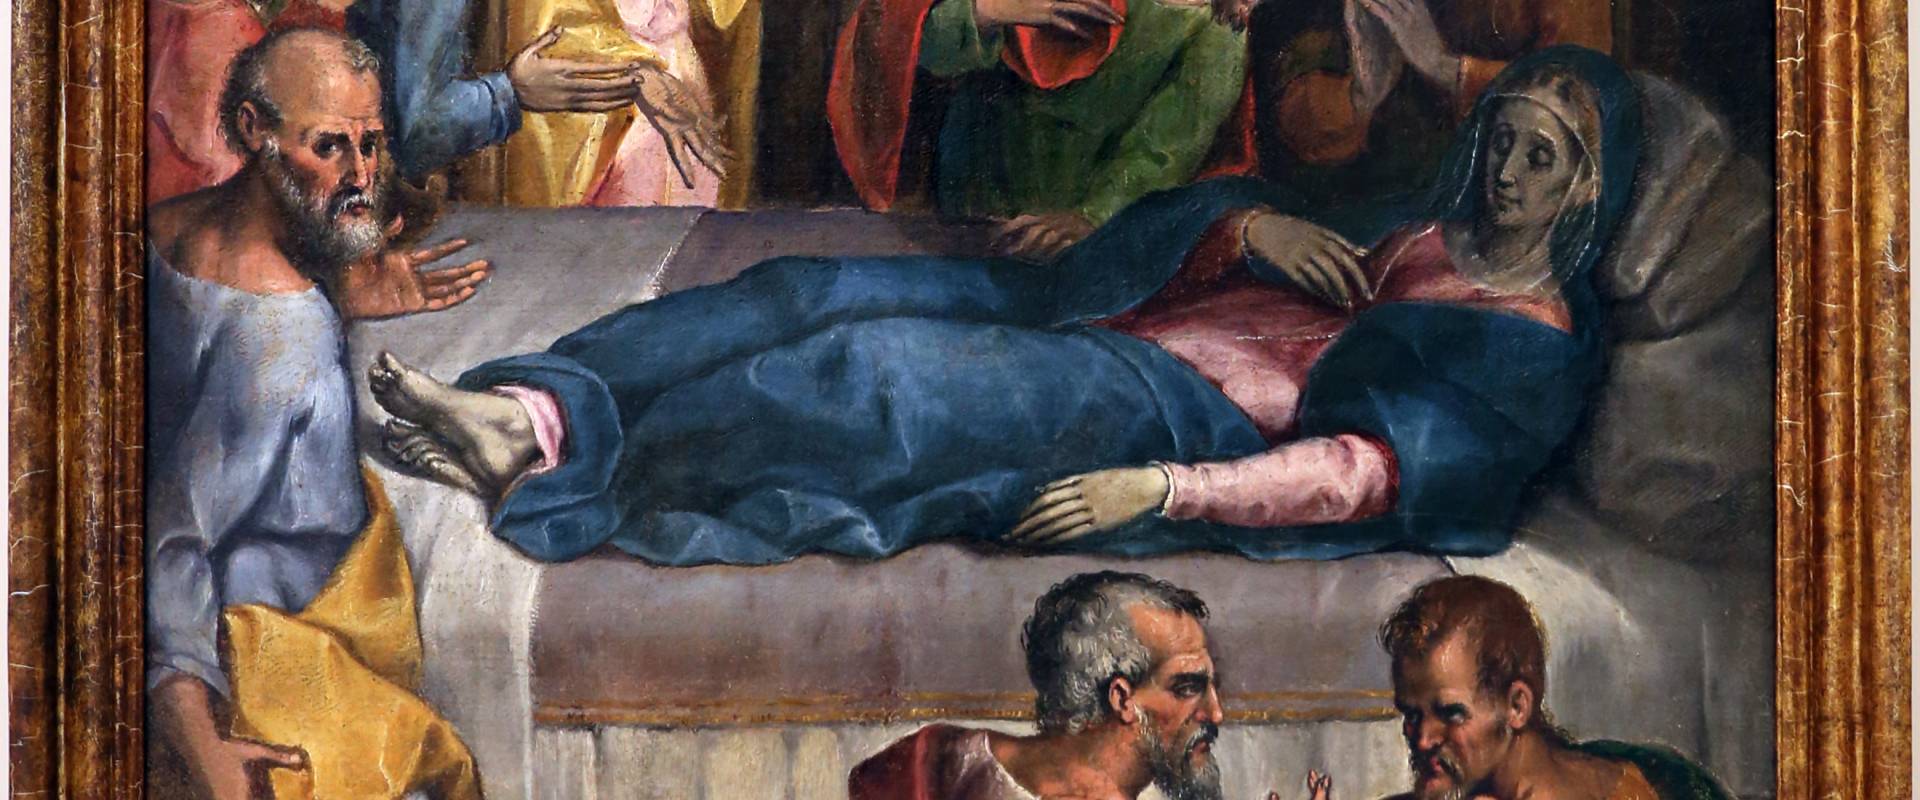 Gian francesco modigliani, morte della vergine, 1590-1600 ca. 01 photo by Sailko